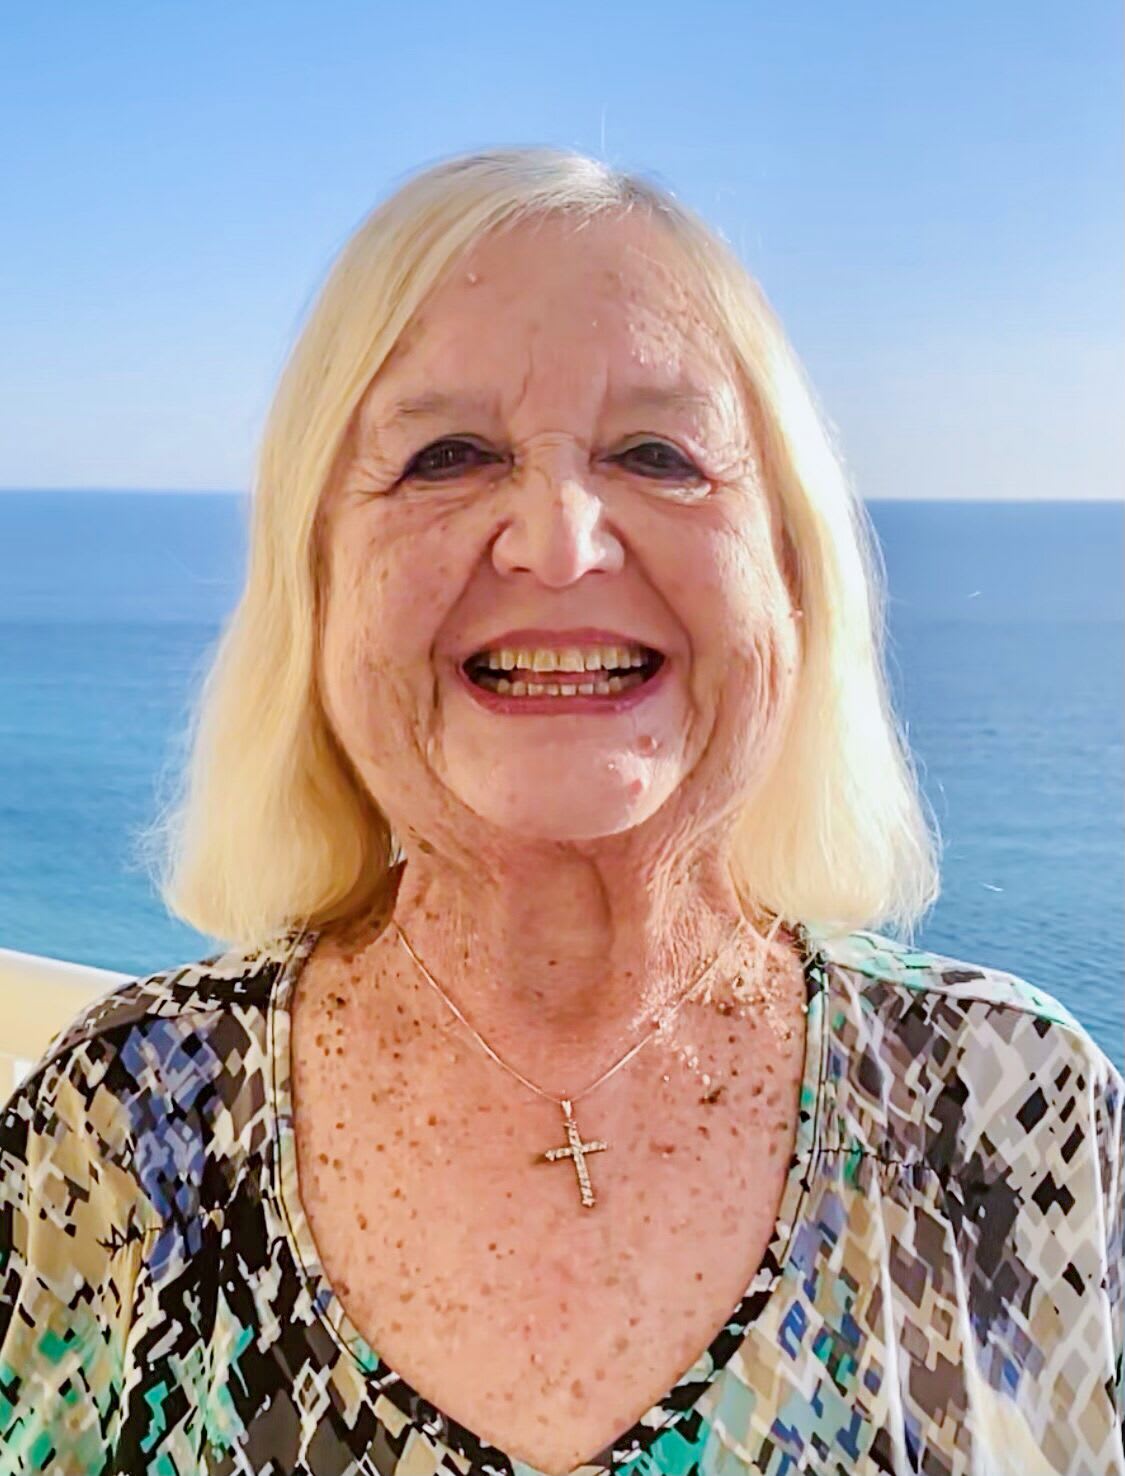 Karen, smiling outside on a beach.